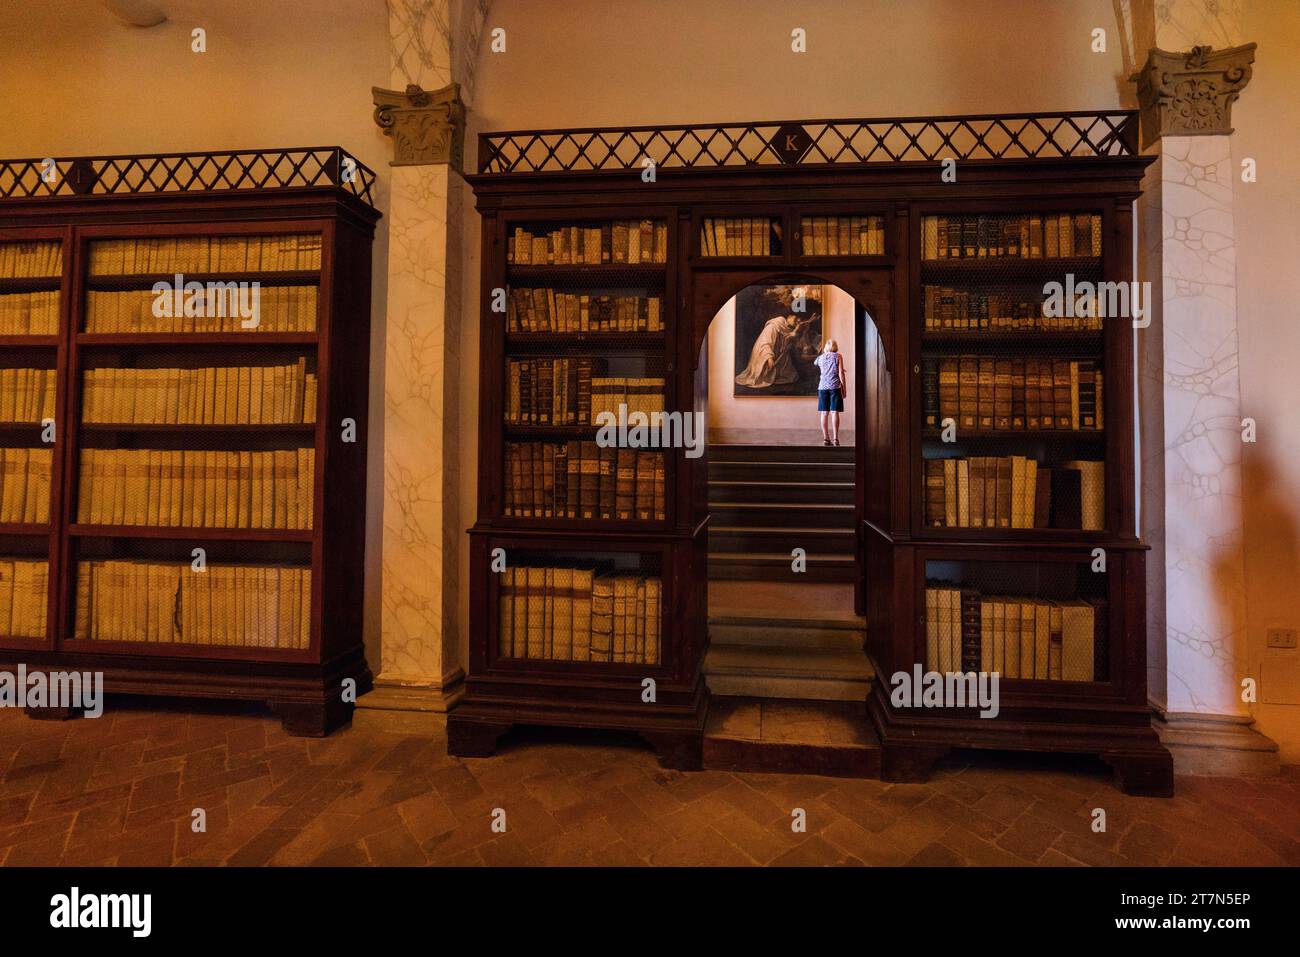 Asciano, Italia: Un turista sube una escalera en medio de las estanterías de la biblioteca El espectacular monasterio de Oliveto, Monte Oliveto Foto de stock